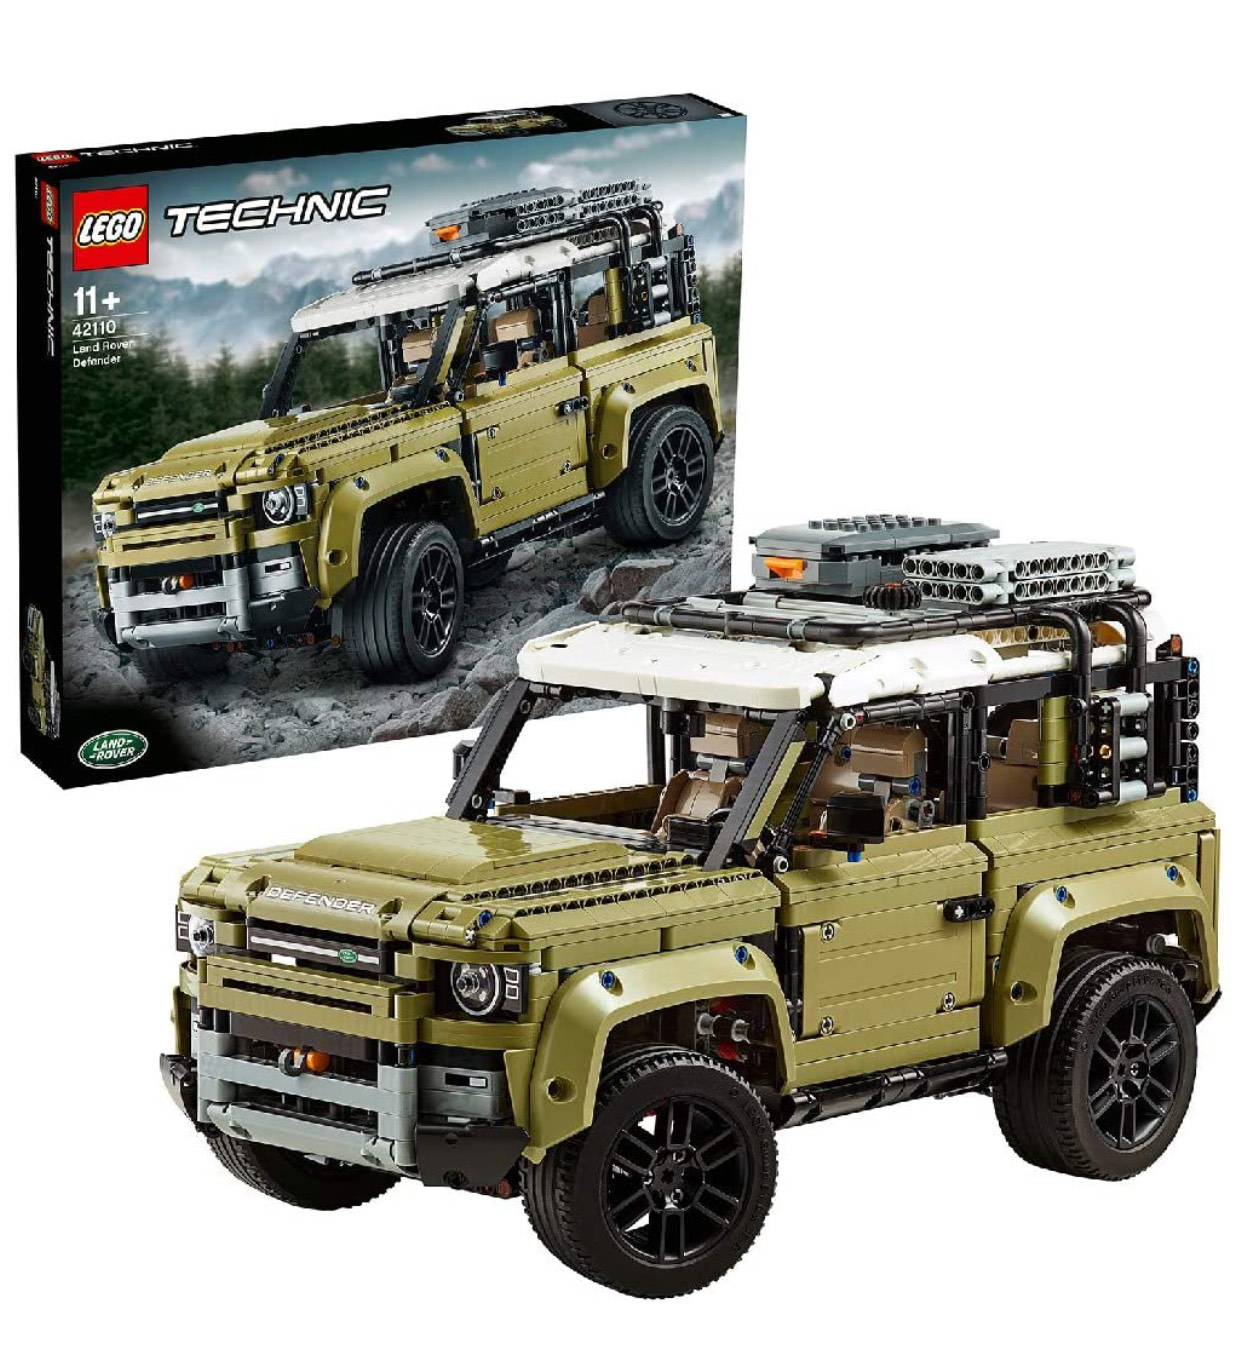 LEGO Technic 42110 Land Rover Defender Off Roader 4x4 Car Toy Â£118.99 at Smyths Toys - hotukdeals